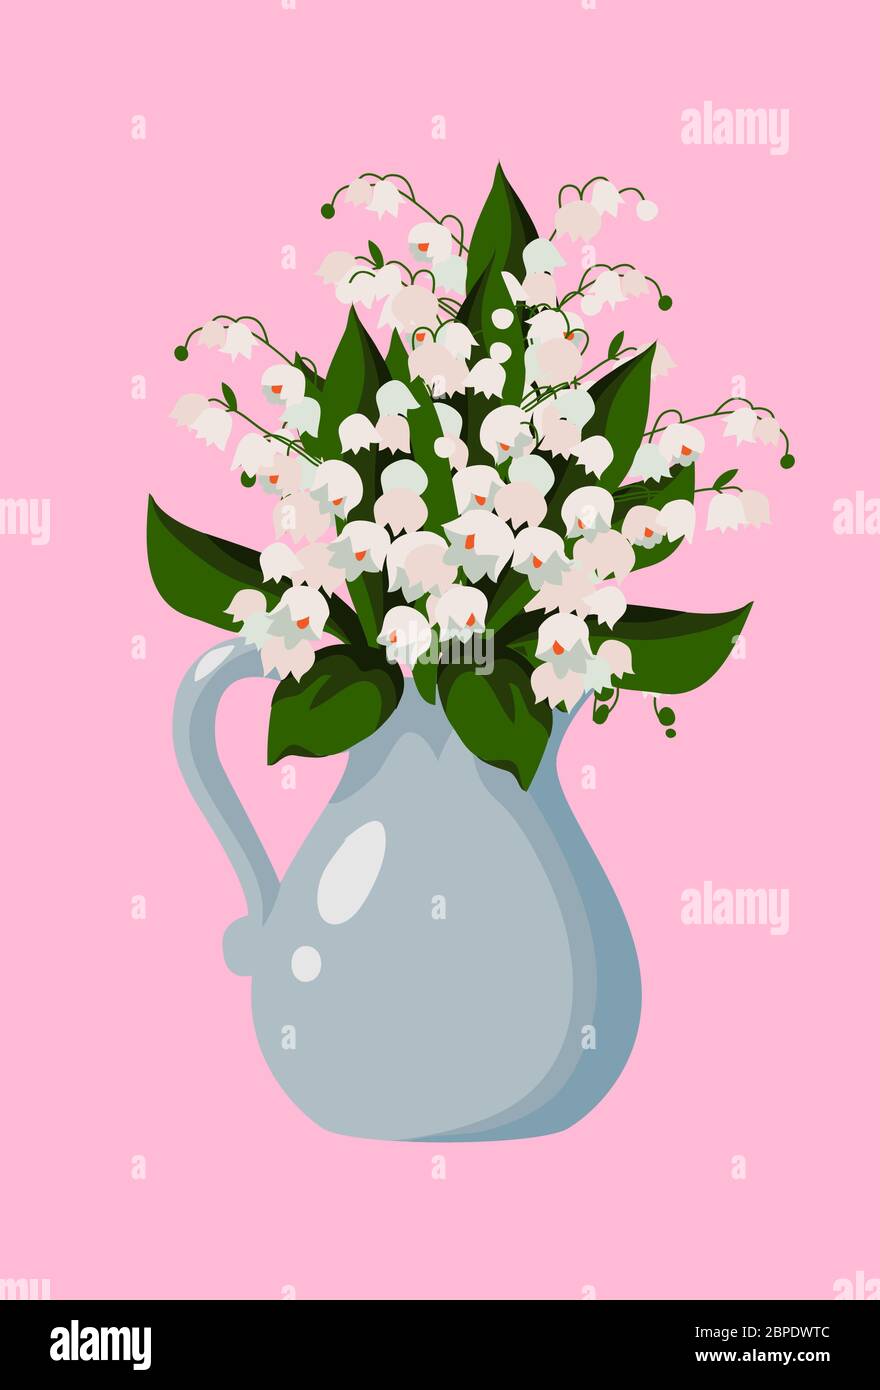 Illustration vectorielle plate avec fleurs printanières, bouquet de lilas blanches mignons de la vallée en vase sur un rose Illustration de Vecteur